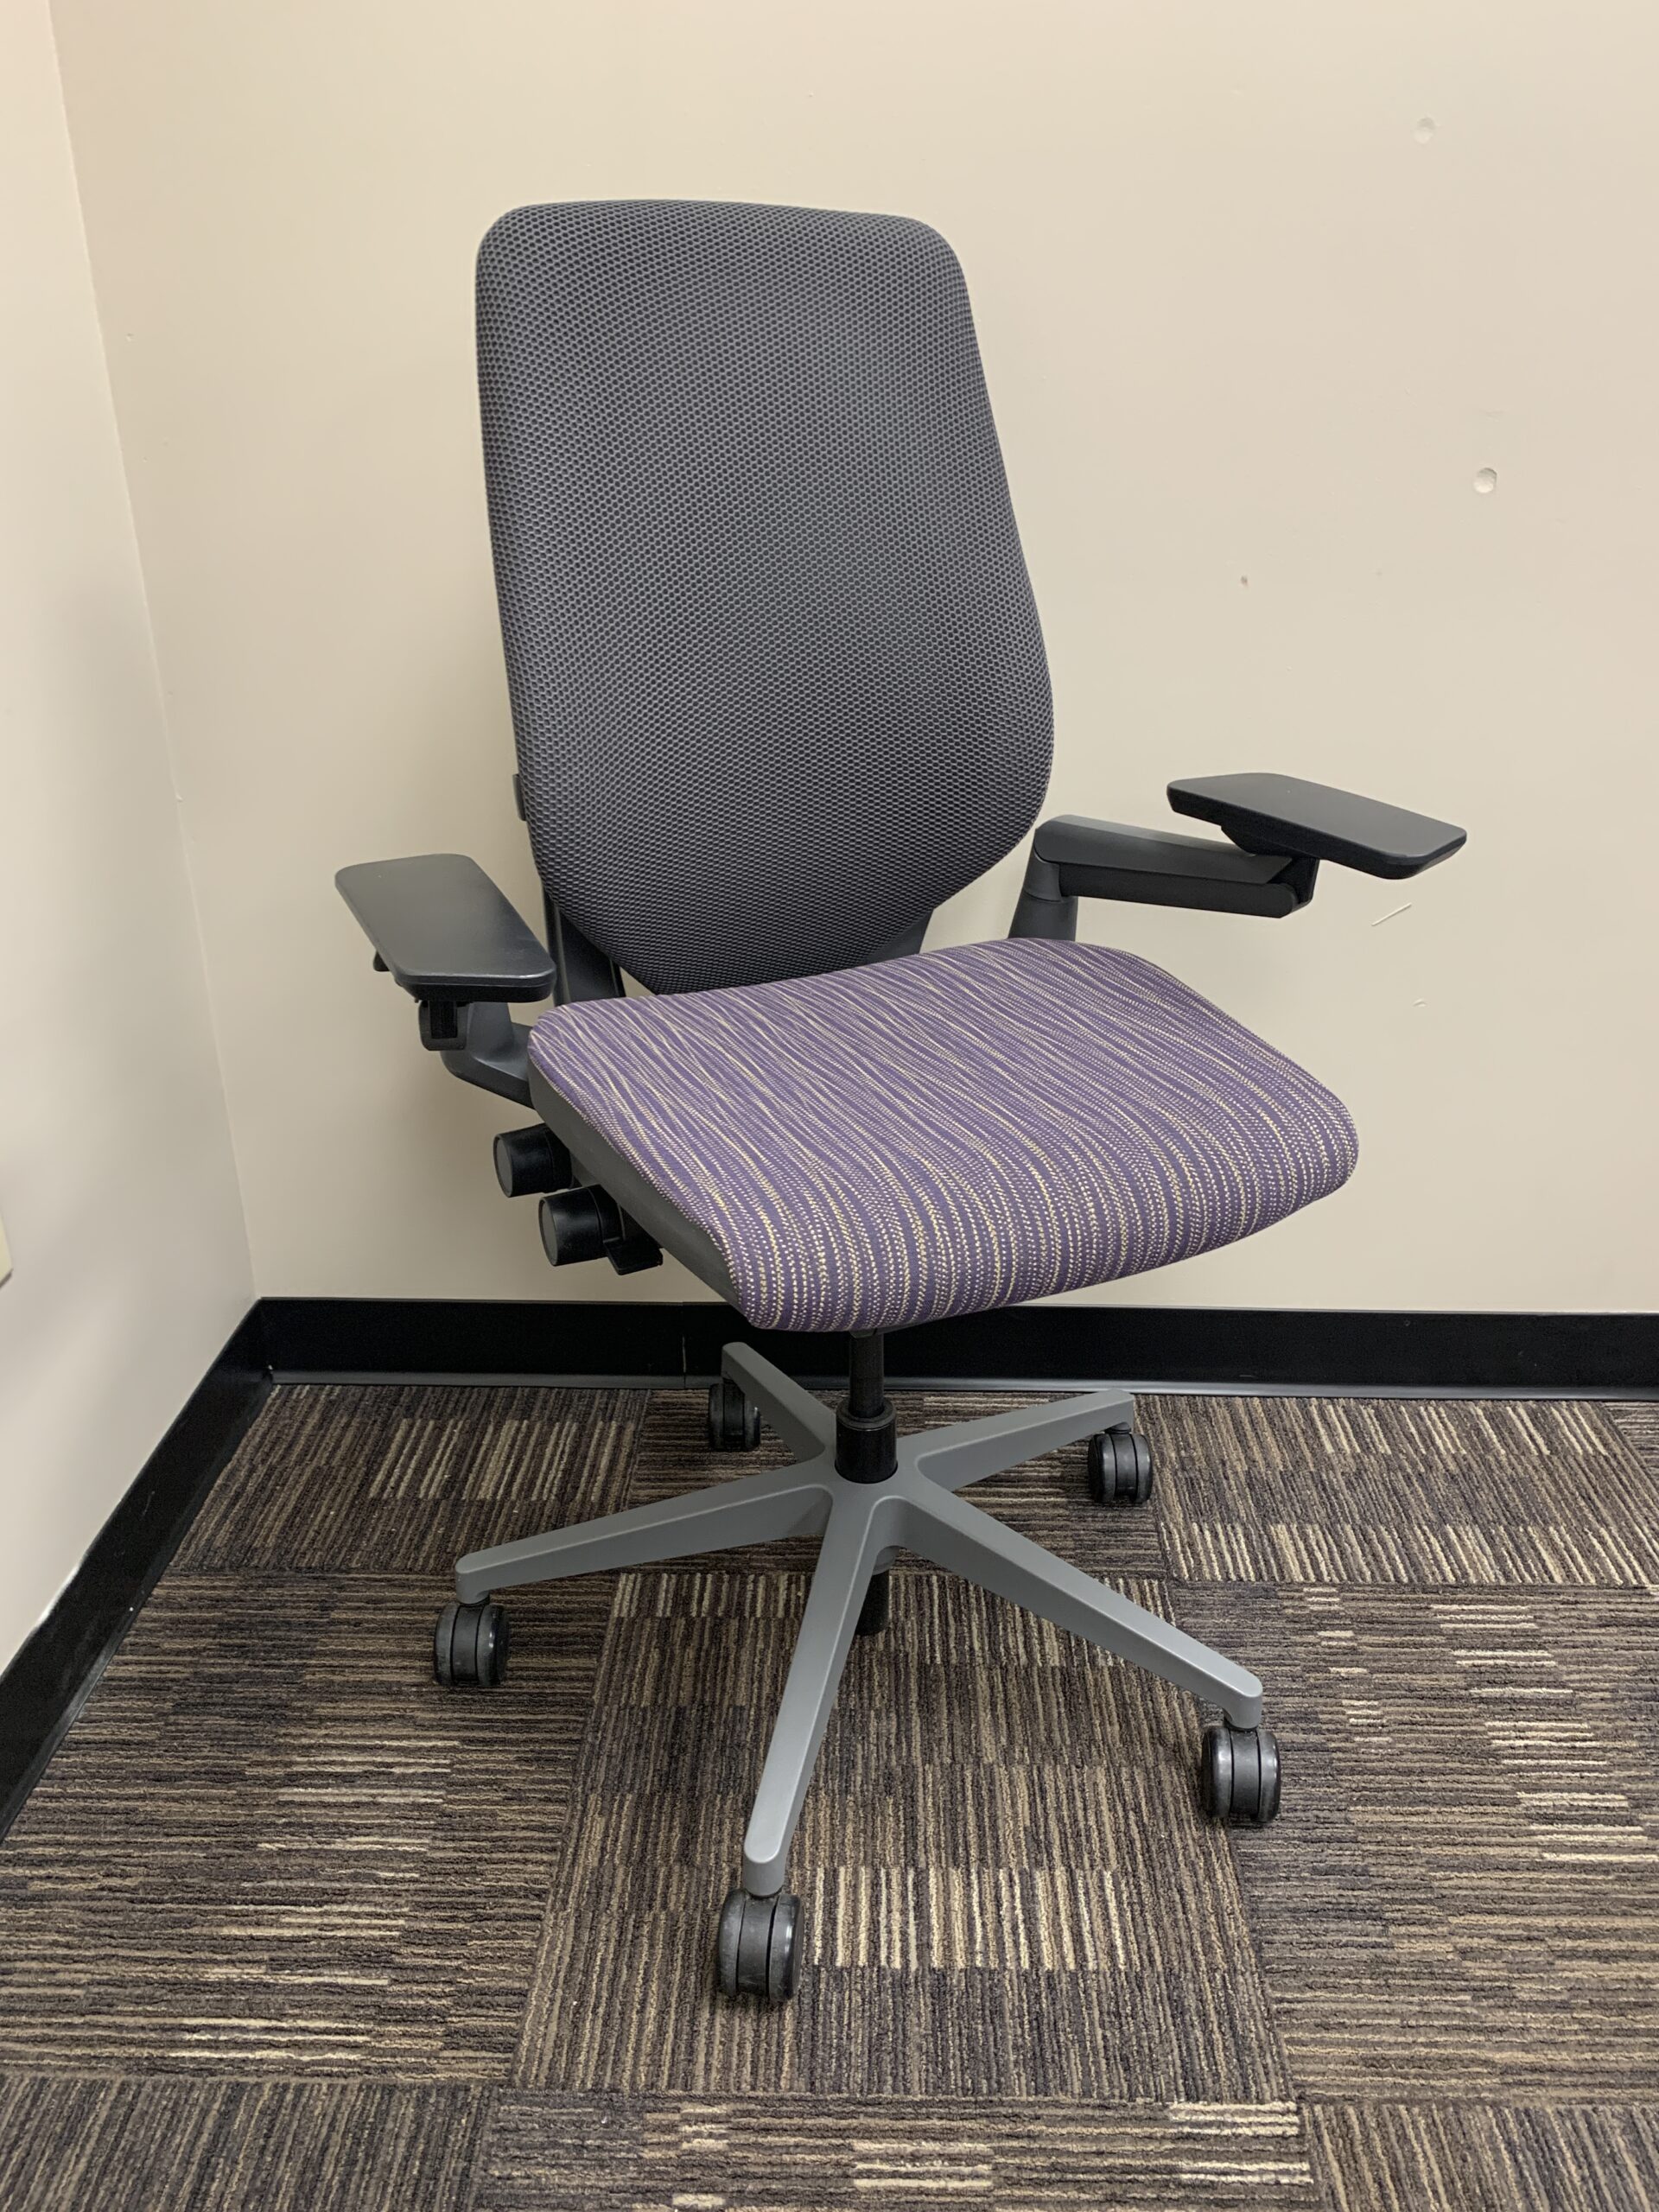  Steelcase Gesture Office Chair - Ergonomic Work Chair